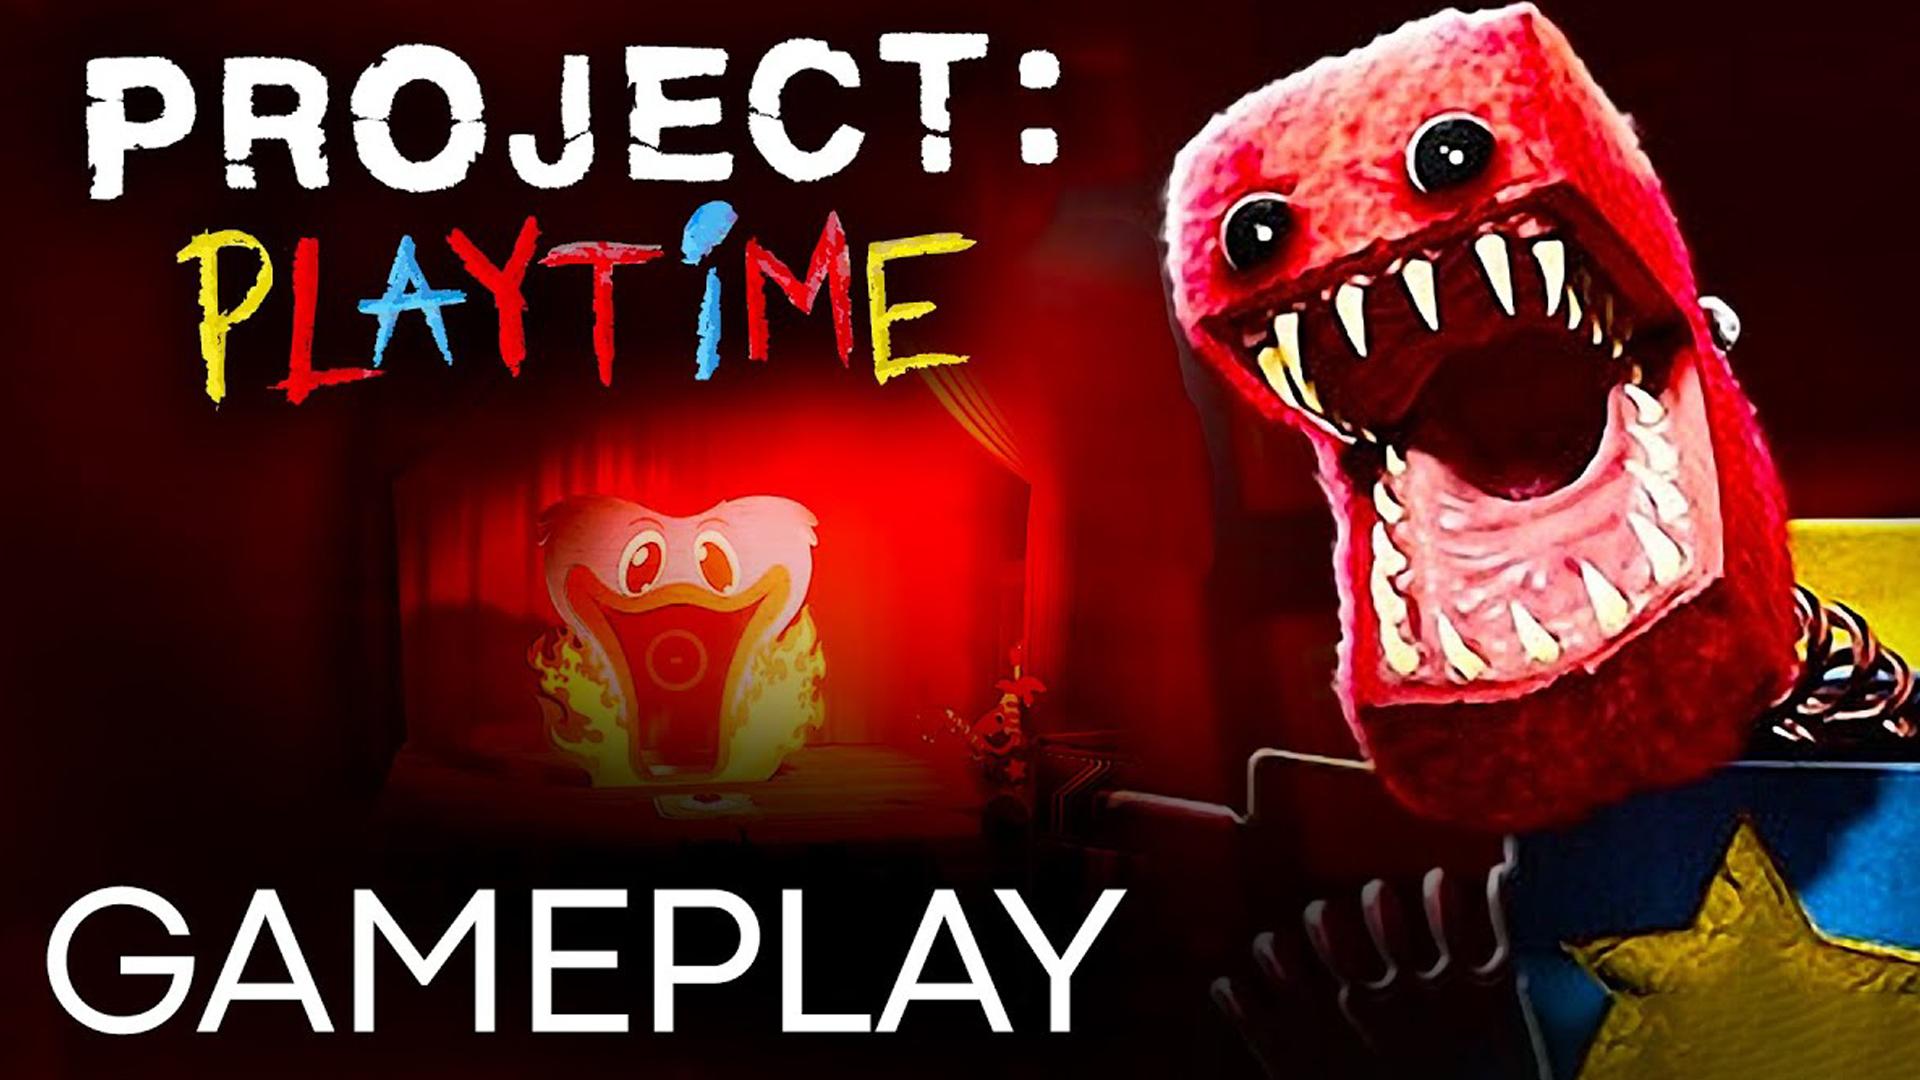 Проджект Плейтайм. Poppy Playtime Project. Poppy Playtime Project Playtime. Project Poppy Play time.